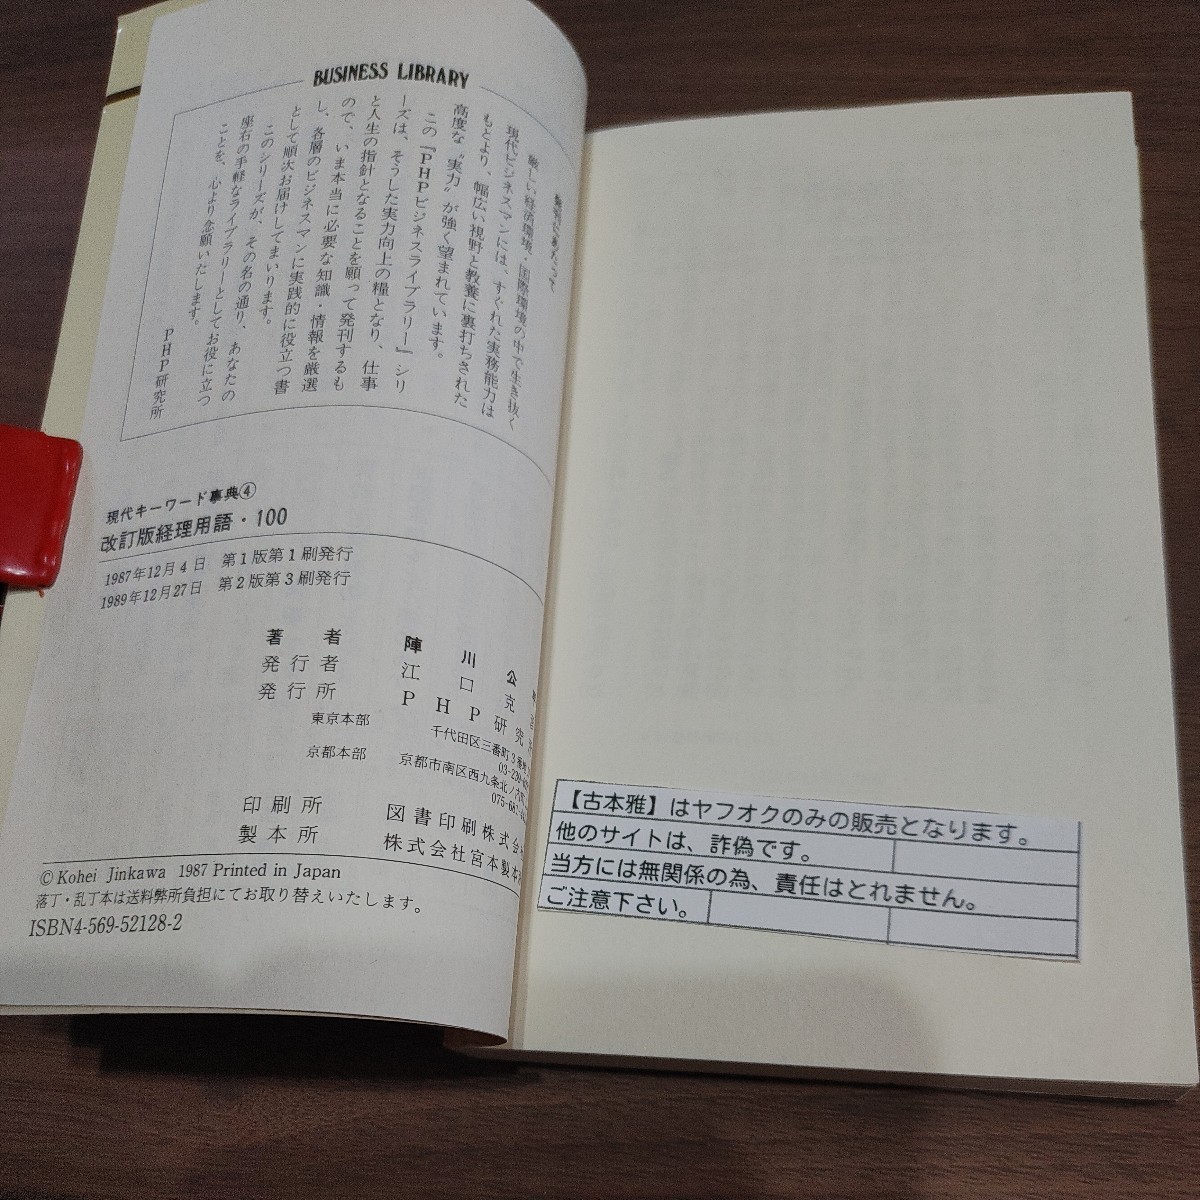 【古本雅】経理用語・100陣川公平著 PHP研究所 ISBN4-569-52128-2 _画像3